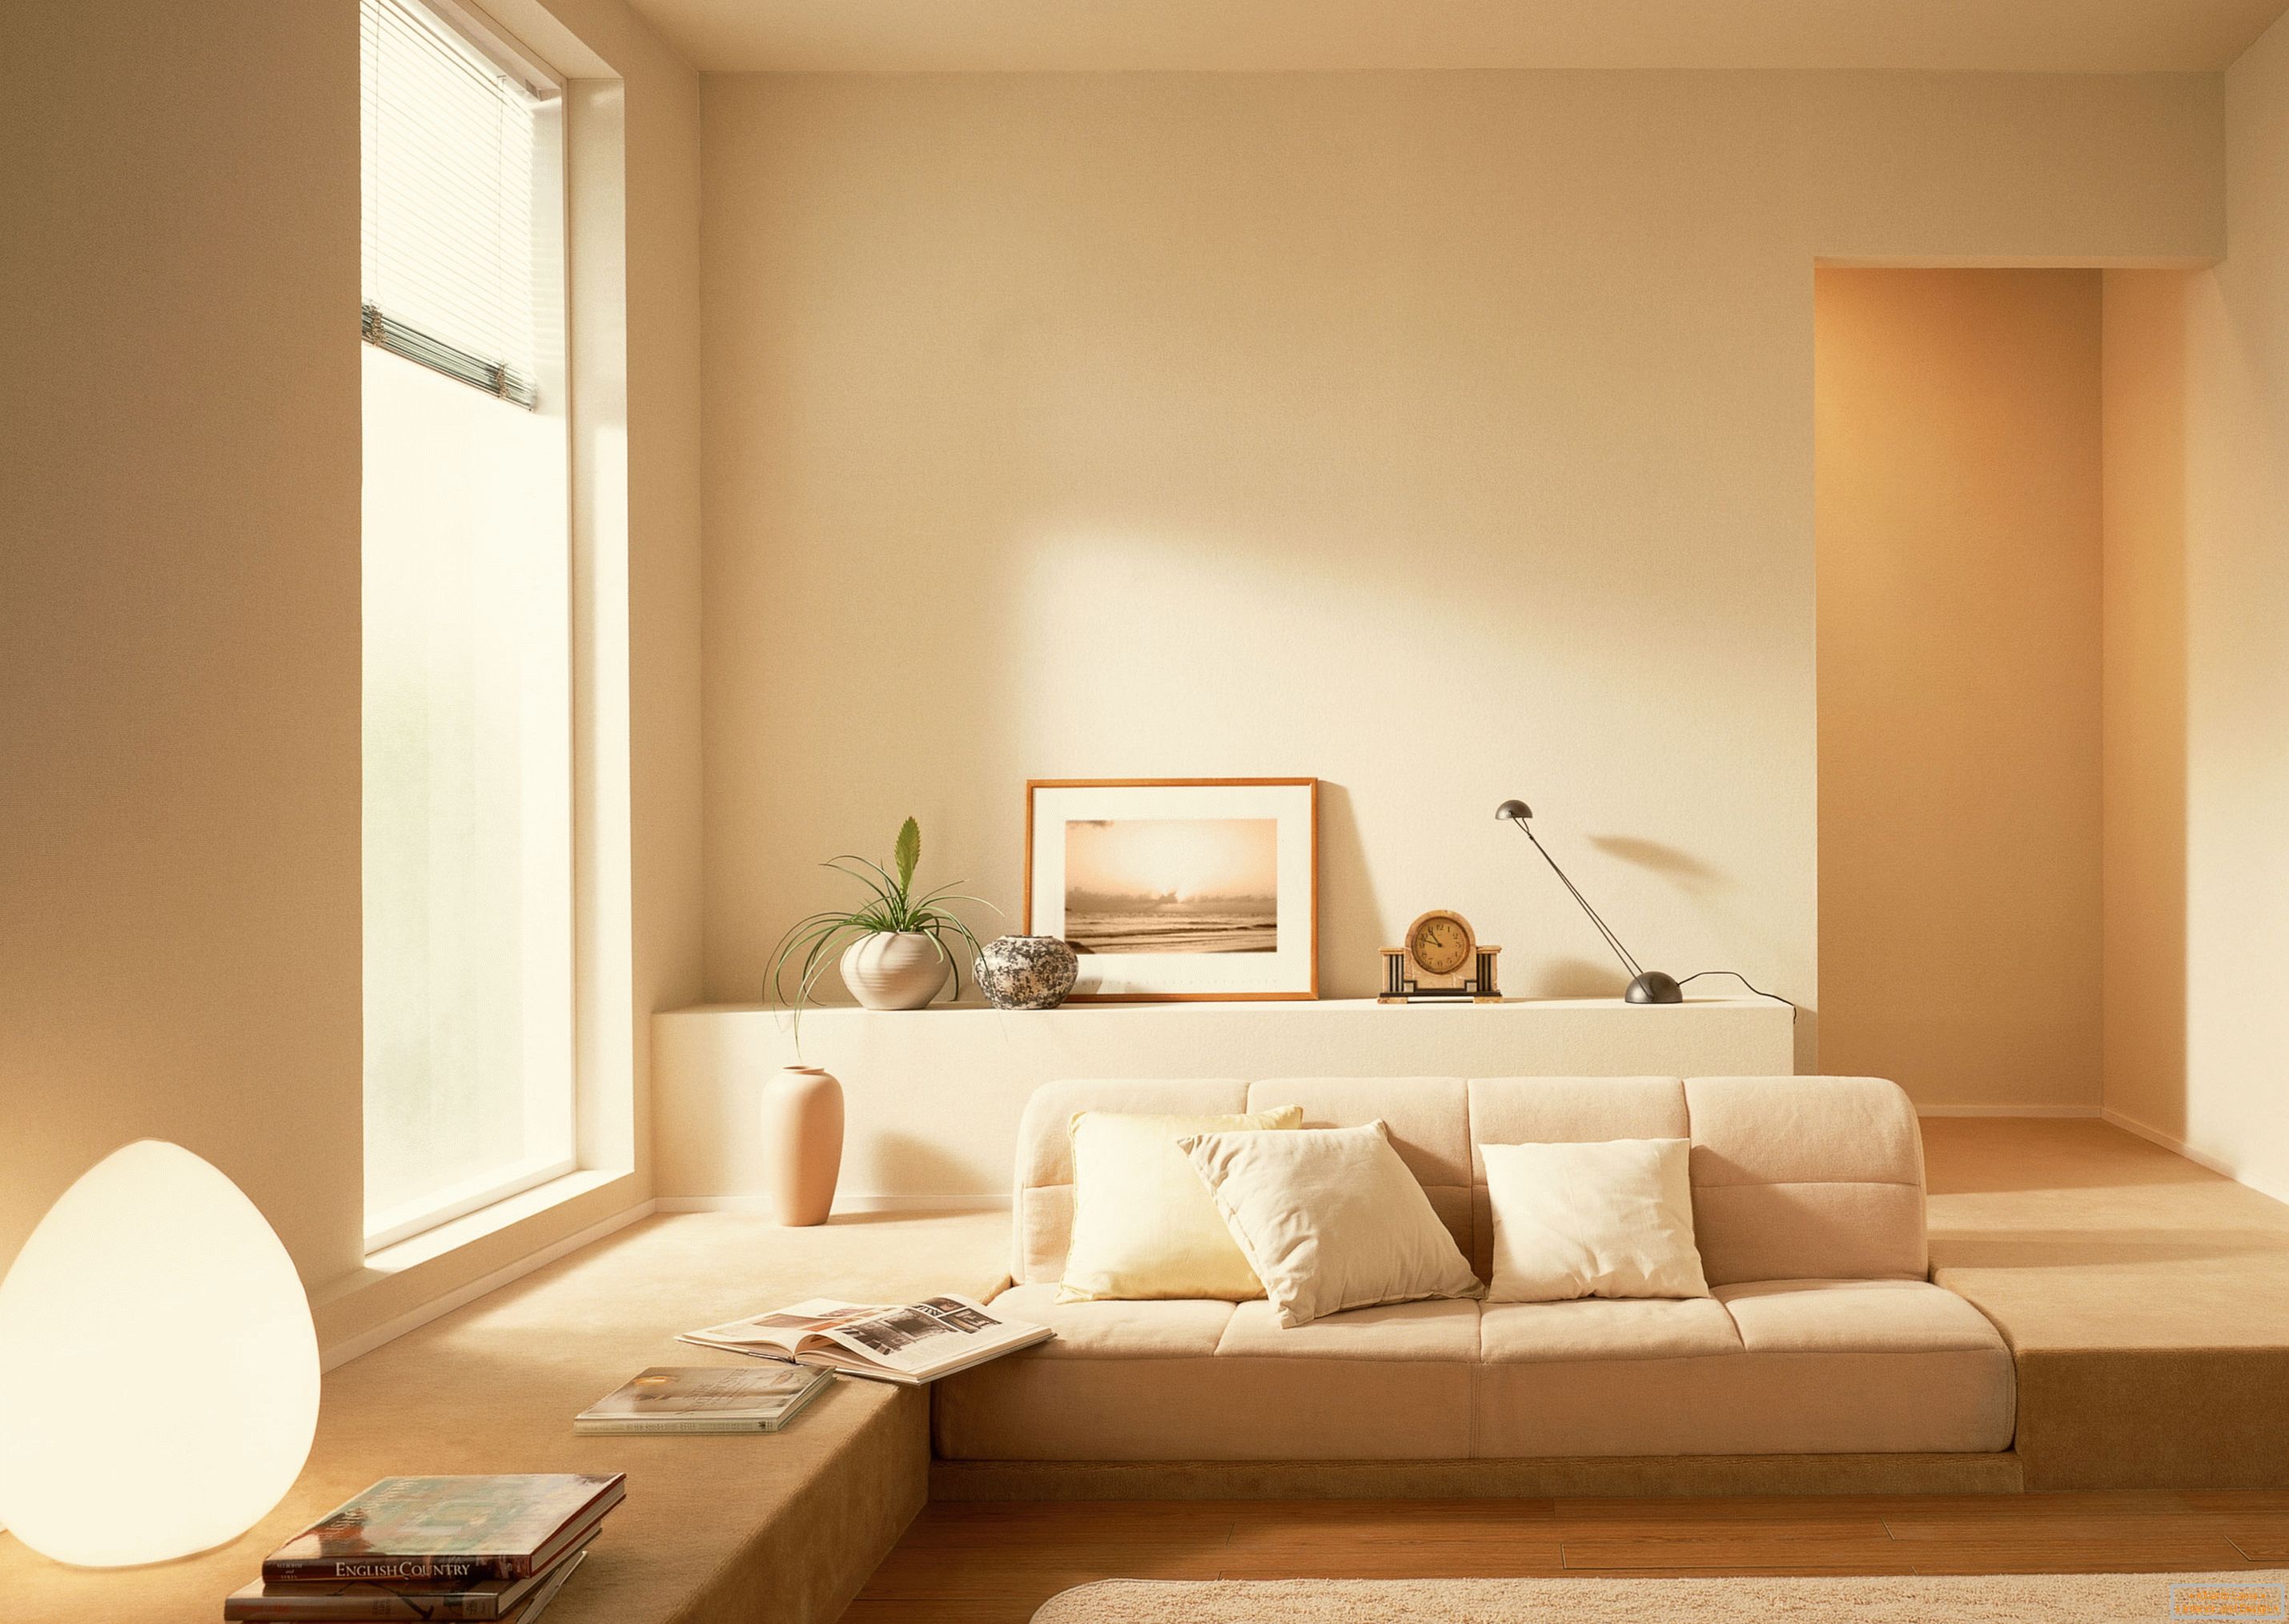 Conformément au style du minimalisme, une teinte beige calme a été utilisée pour organiser l'intérieur du salon.